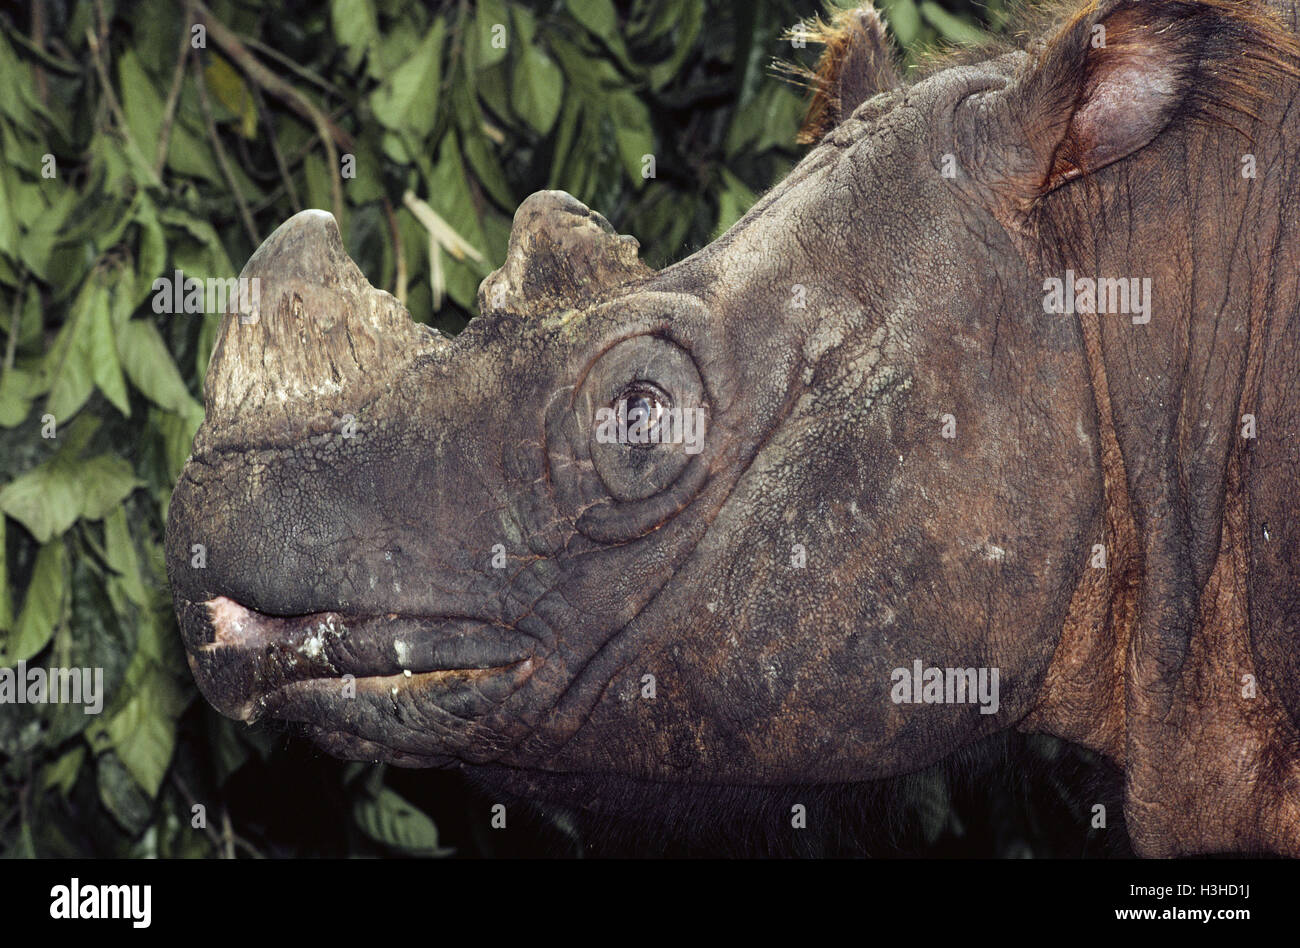 Sumatran rhinoceros (Dicerorhinus sumatrensis) Stock Photo